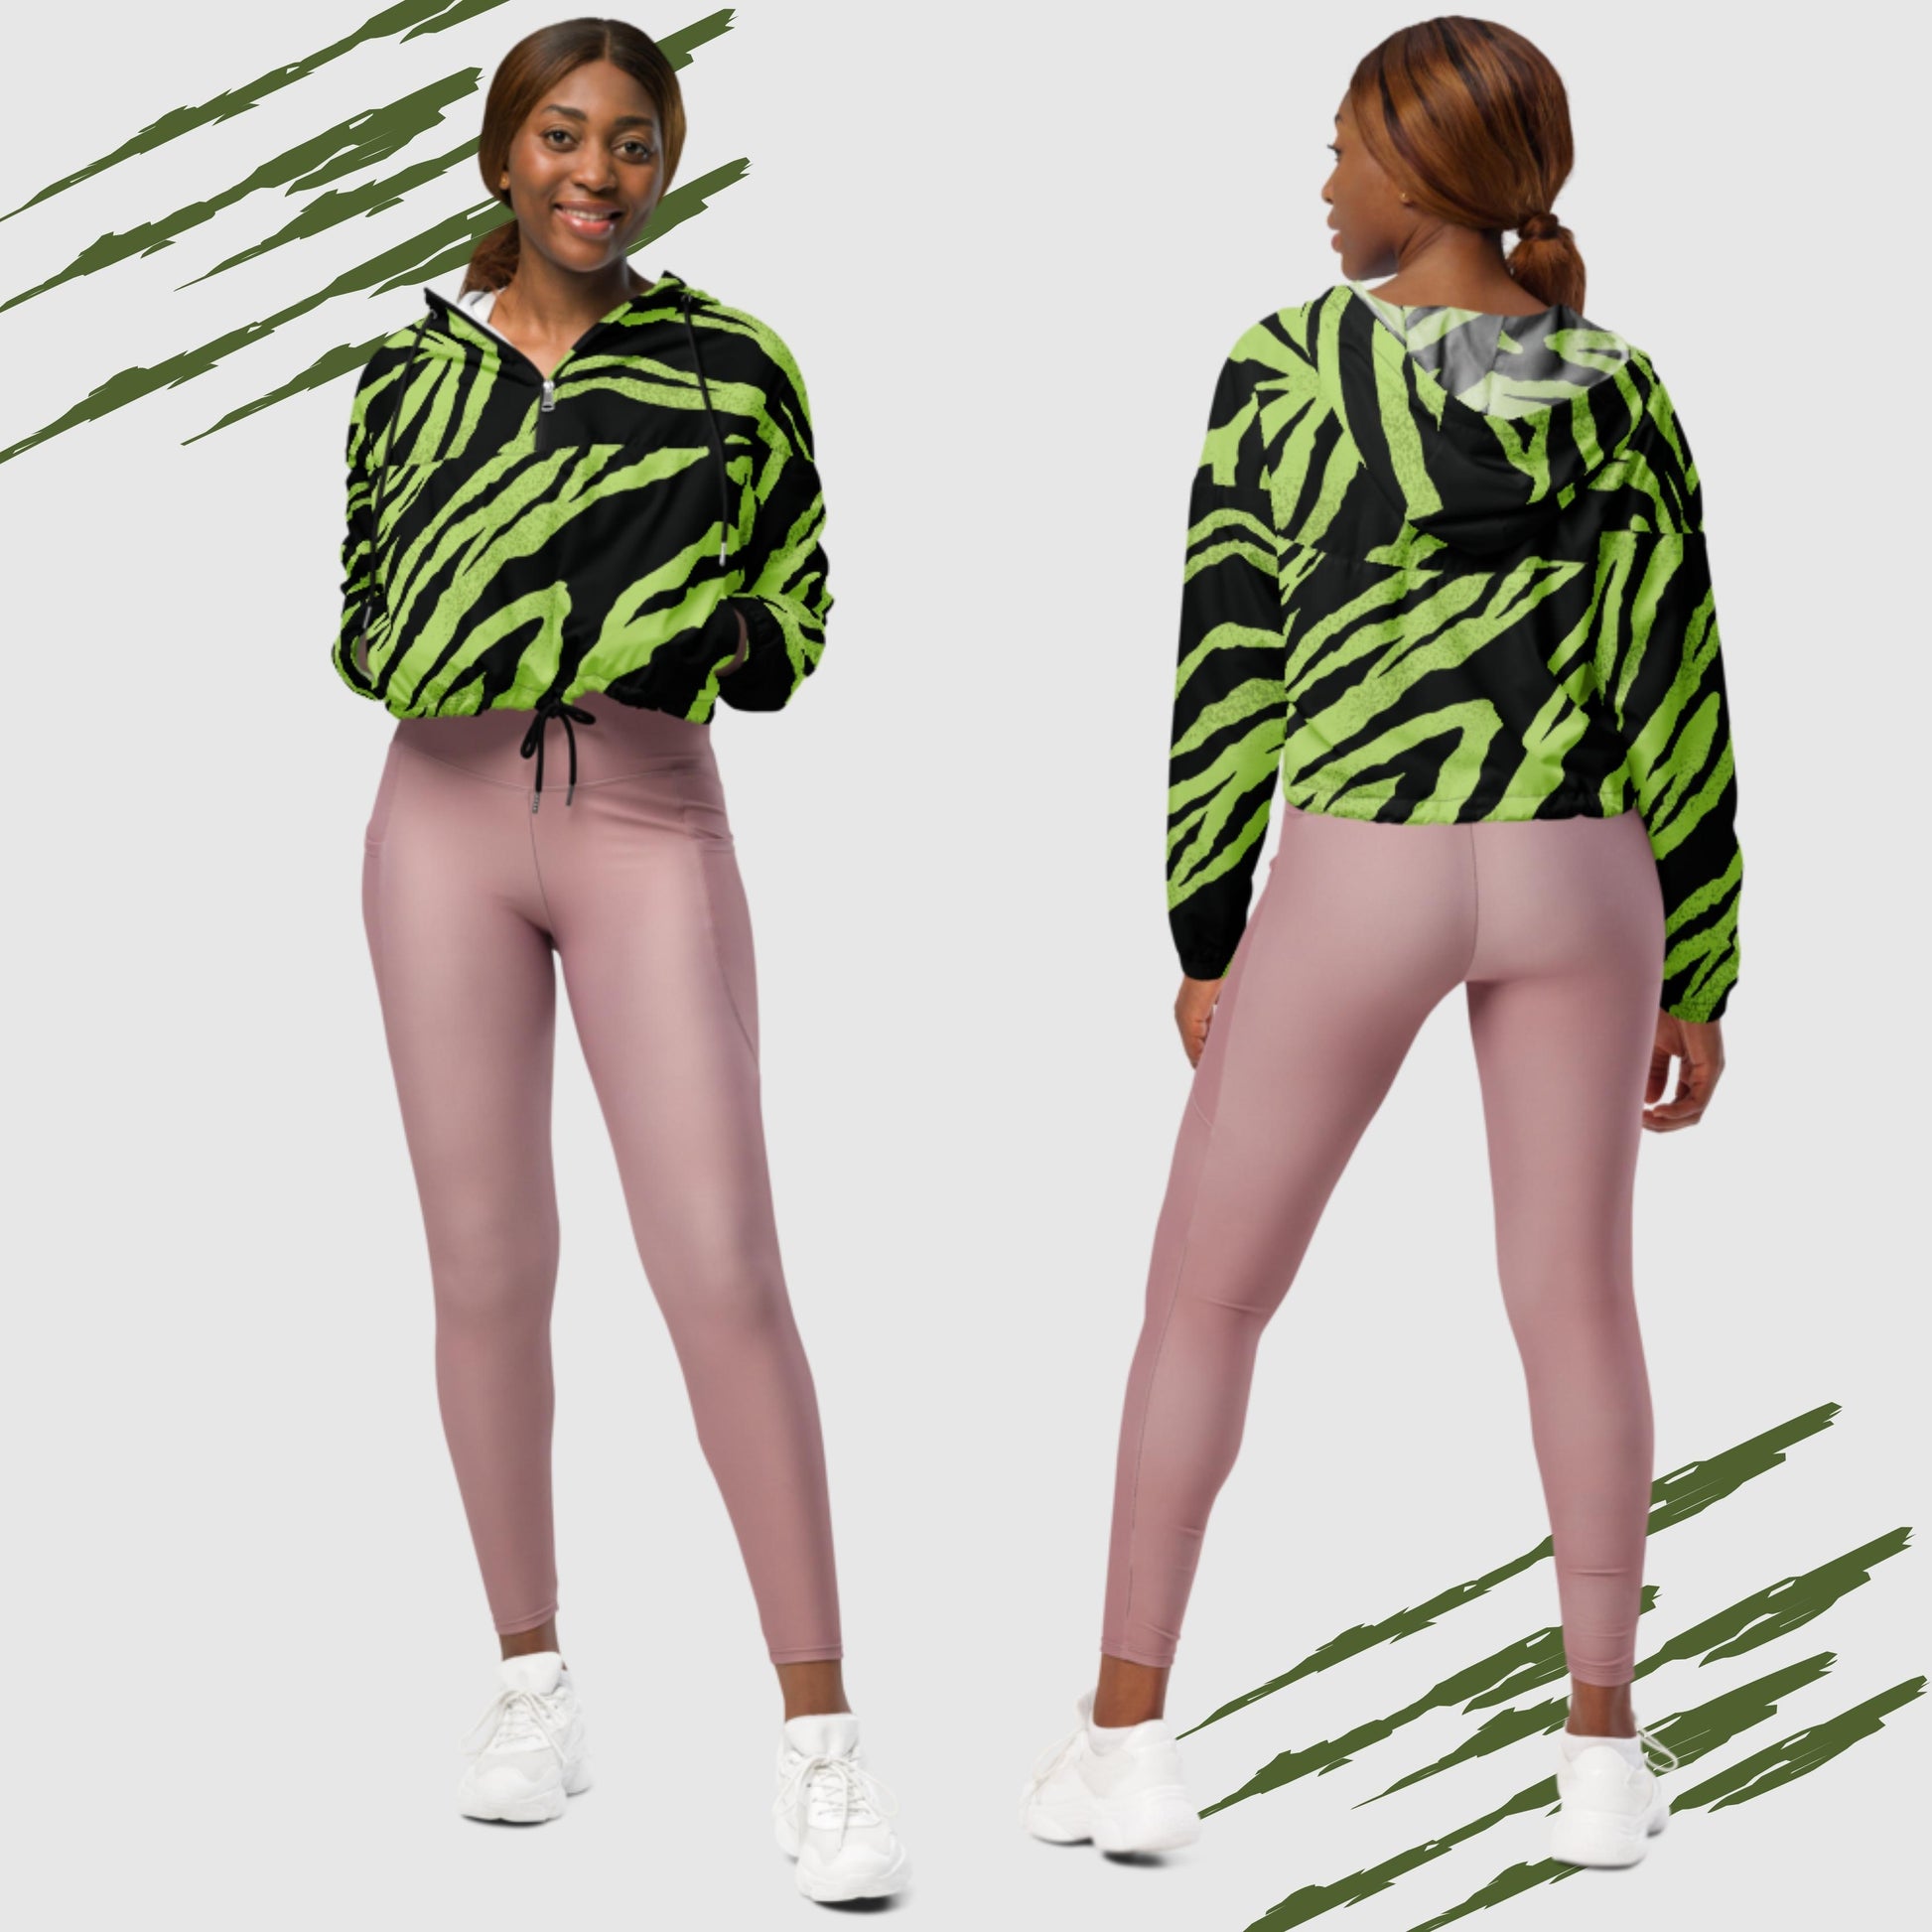 Women’s Green Tiger Pattern Cropped Windbreaker